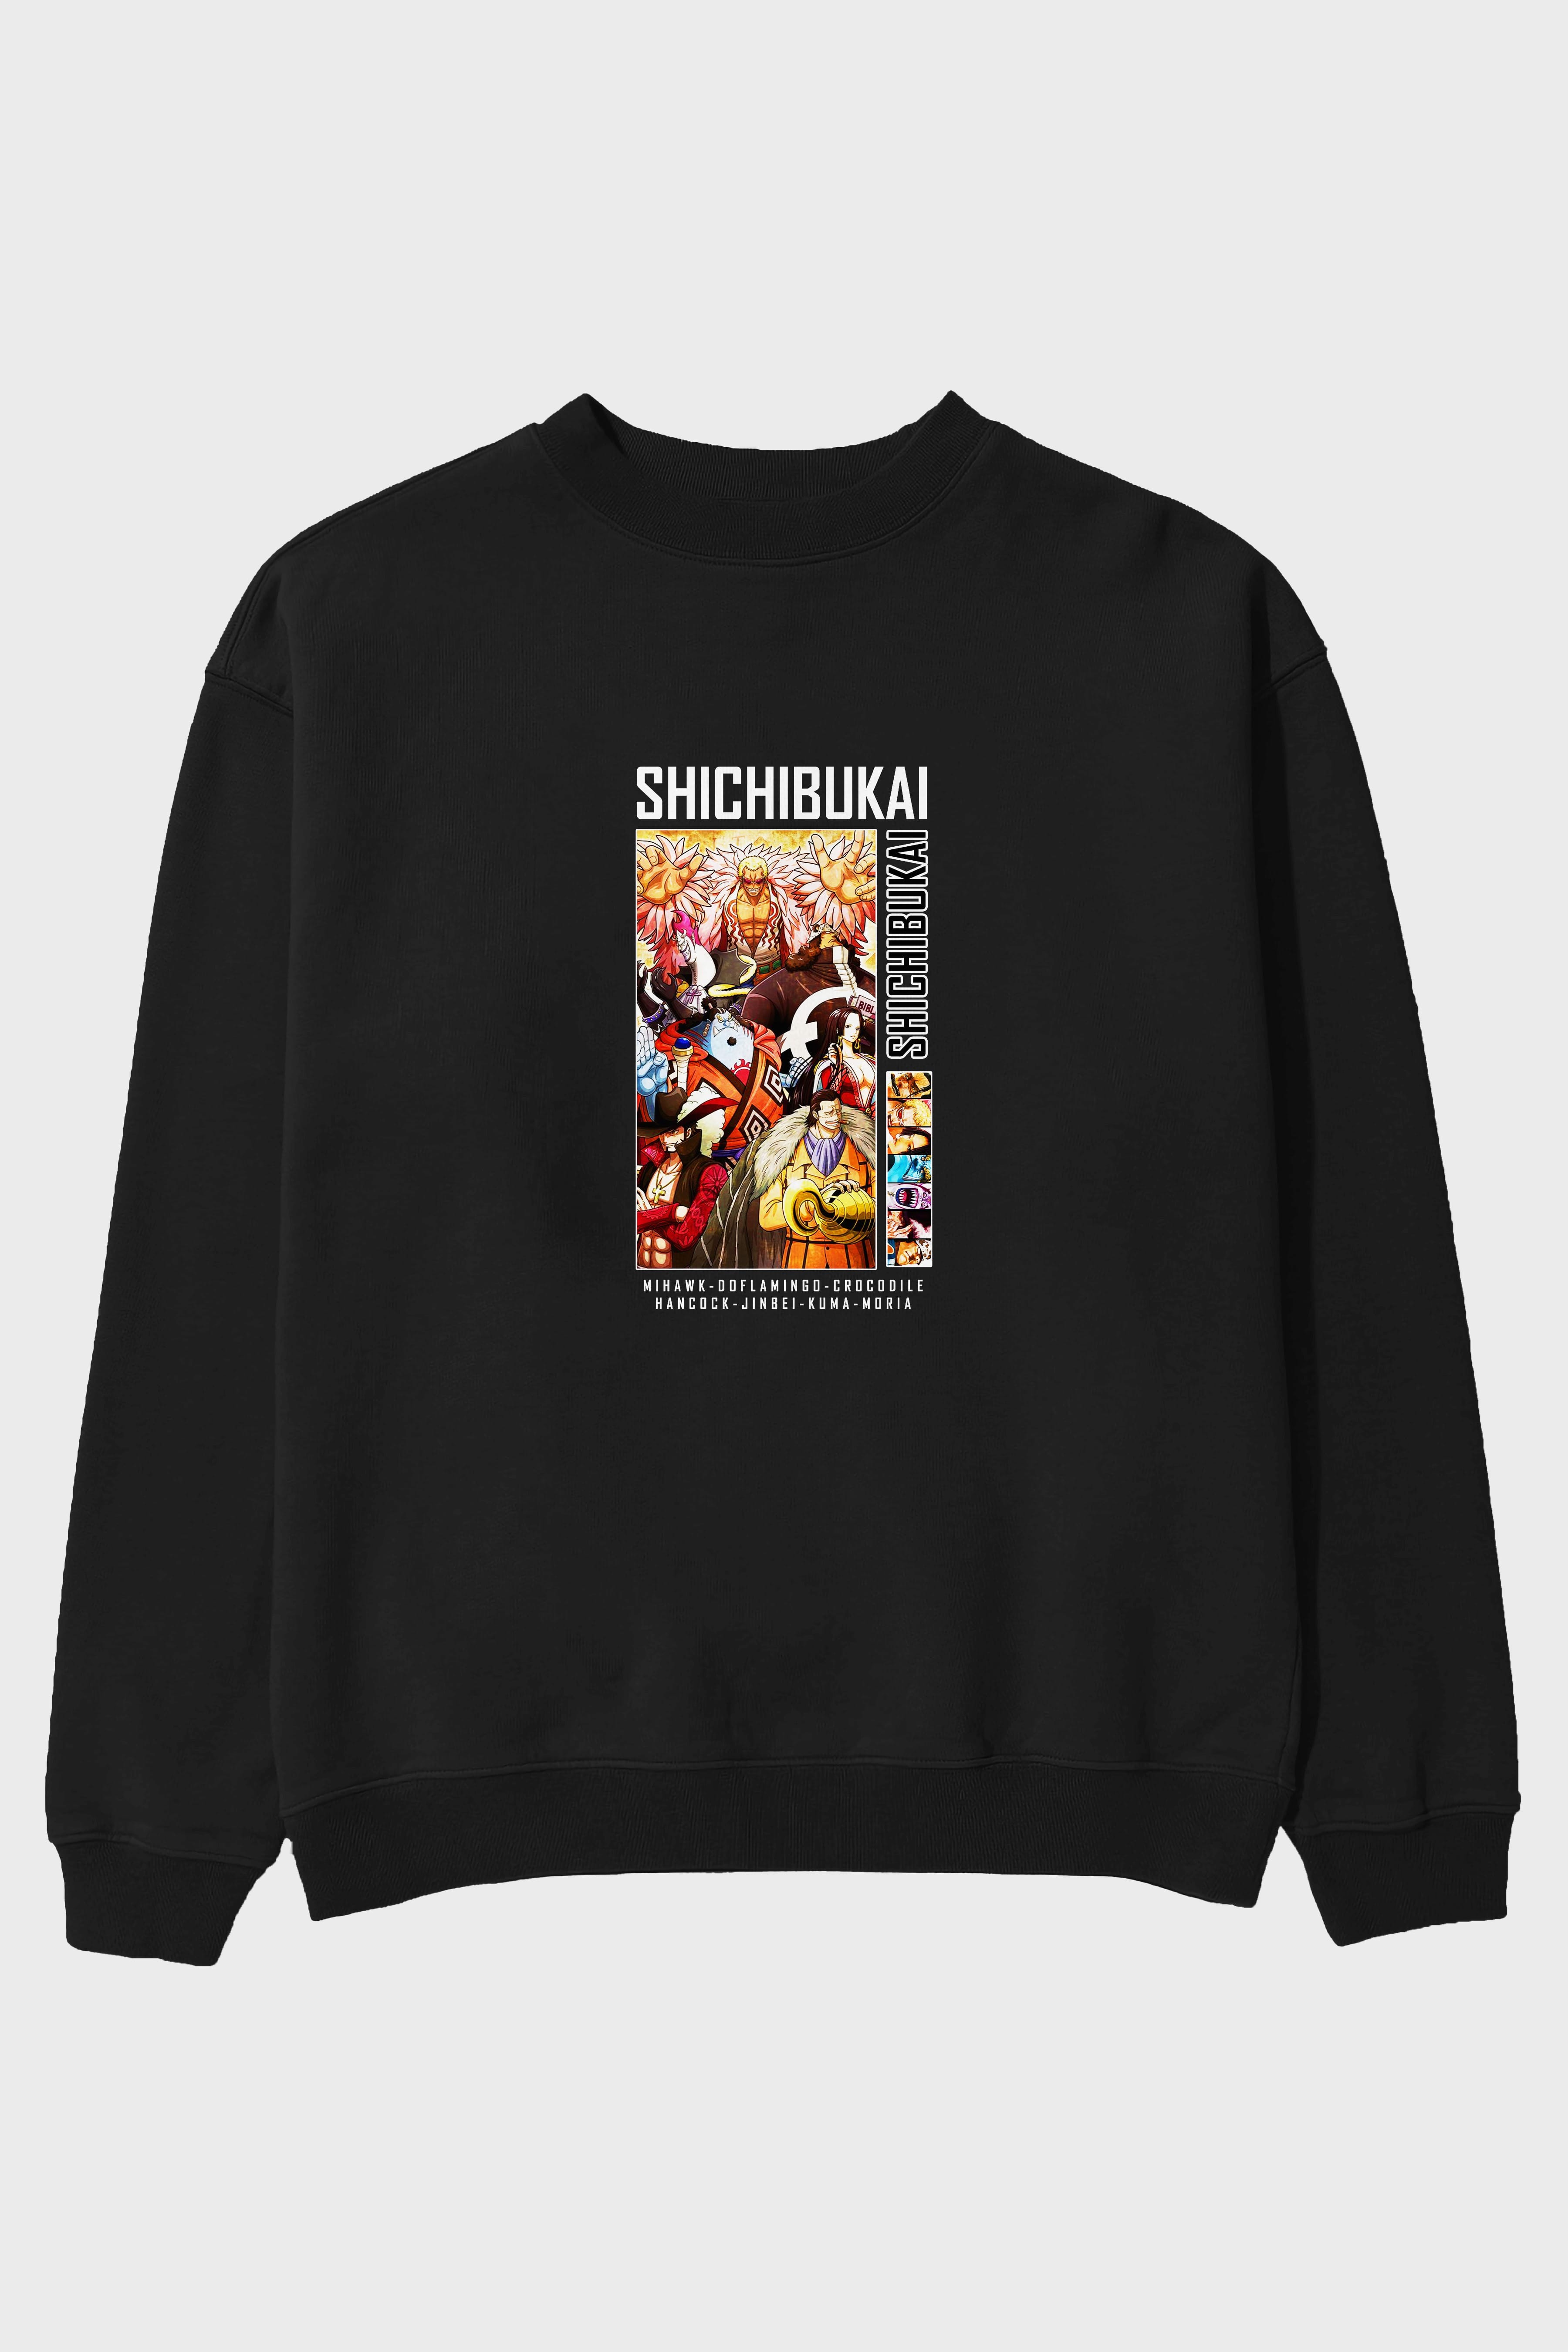 Shichibukai Ön Baskılı Anime Oversize Sweatshirt Erkek Kadın Unisex